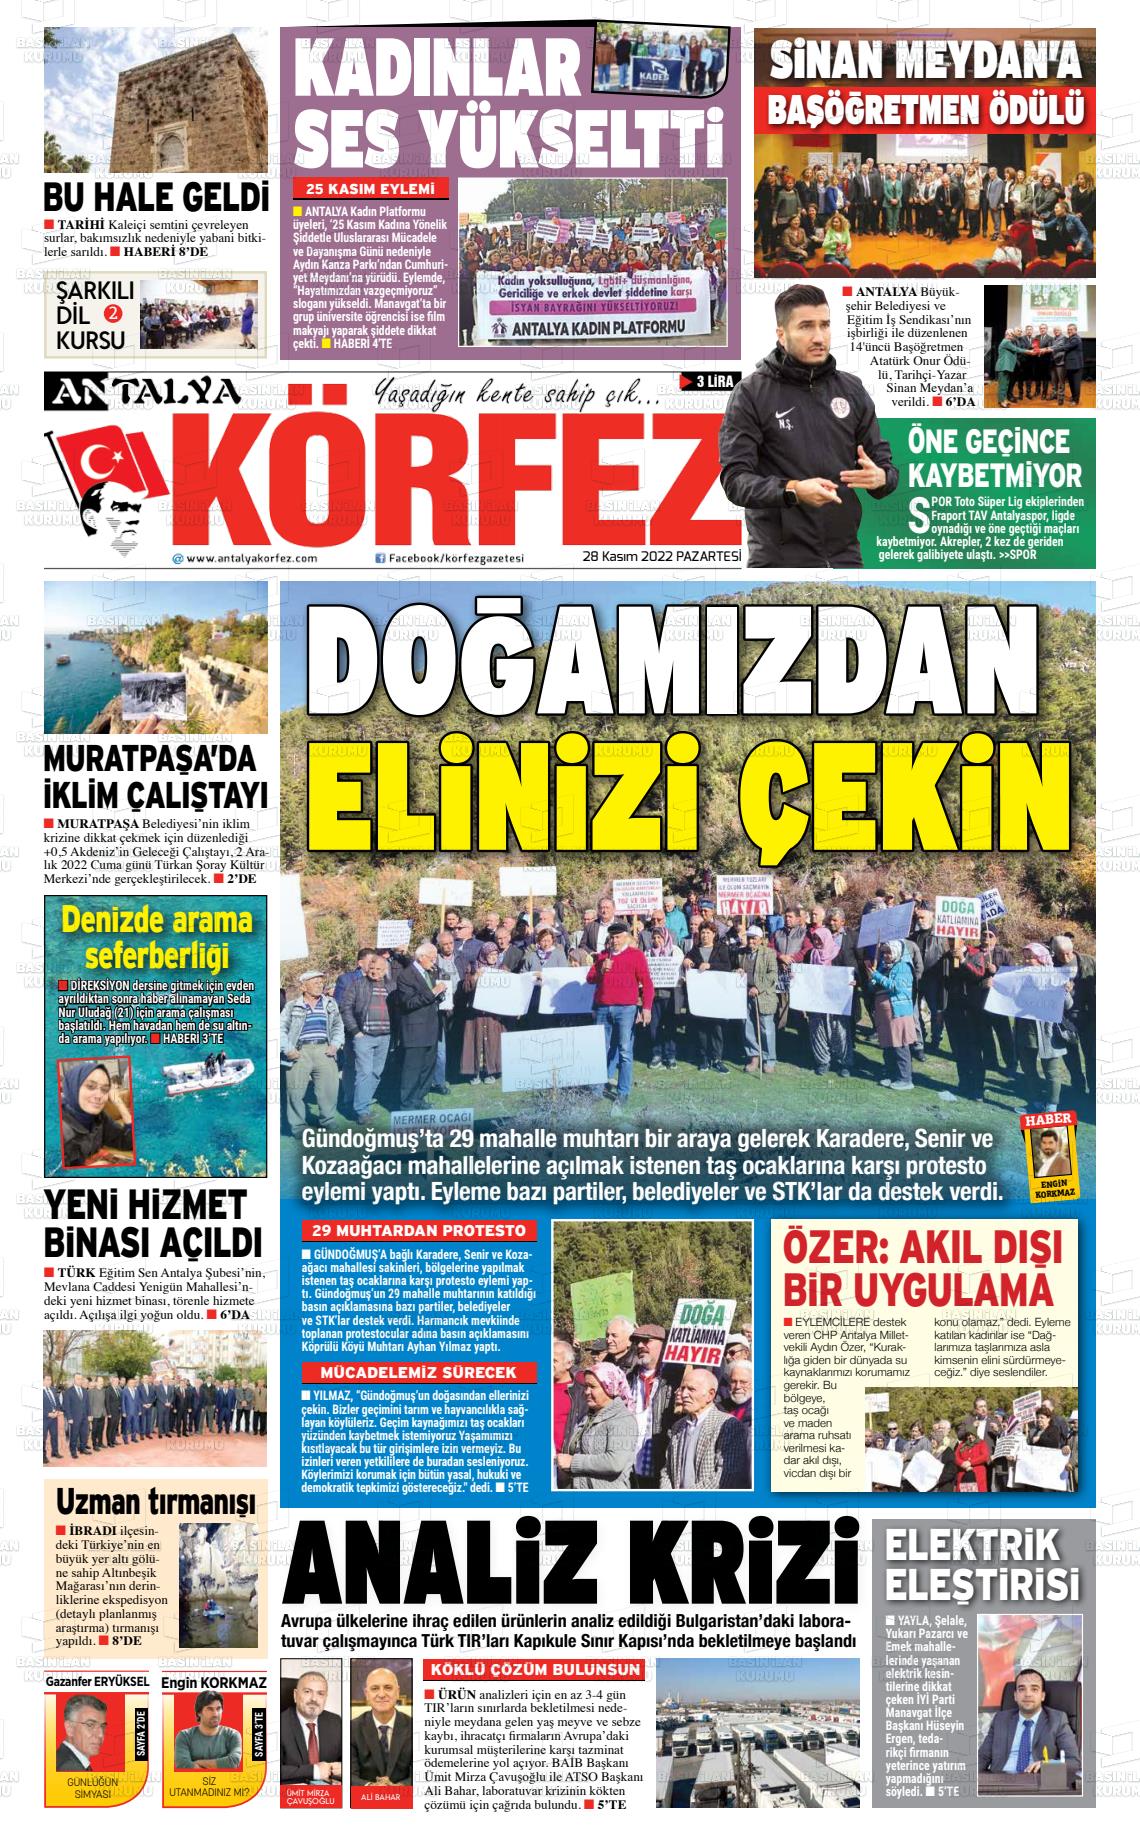 28 Kasım 2022 Antalya Körfez Gazete Manşeti